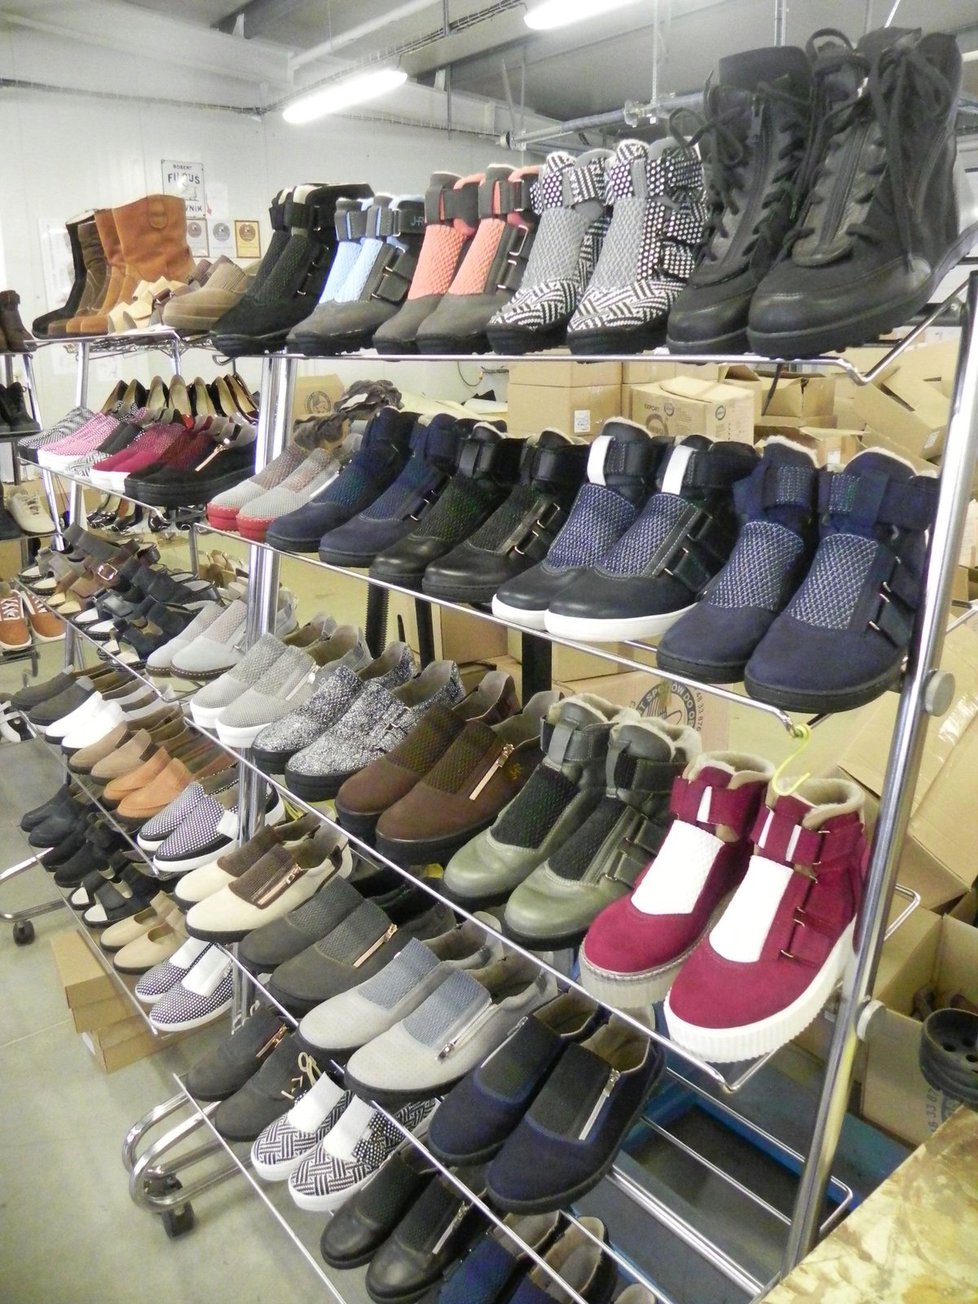 Hanákovu obuv si mlže zákazník prohlédnout, vyzkoušet a objednat přímo v dílně.